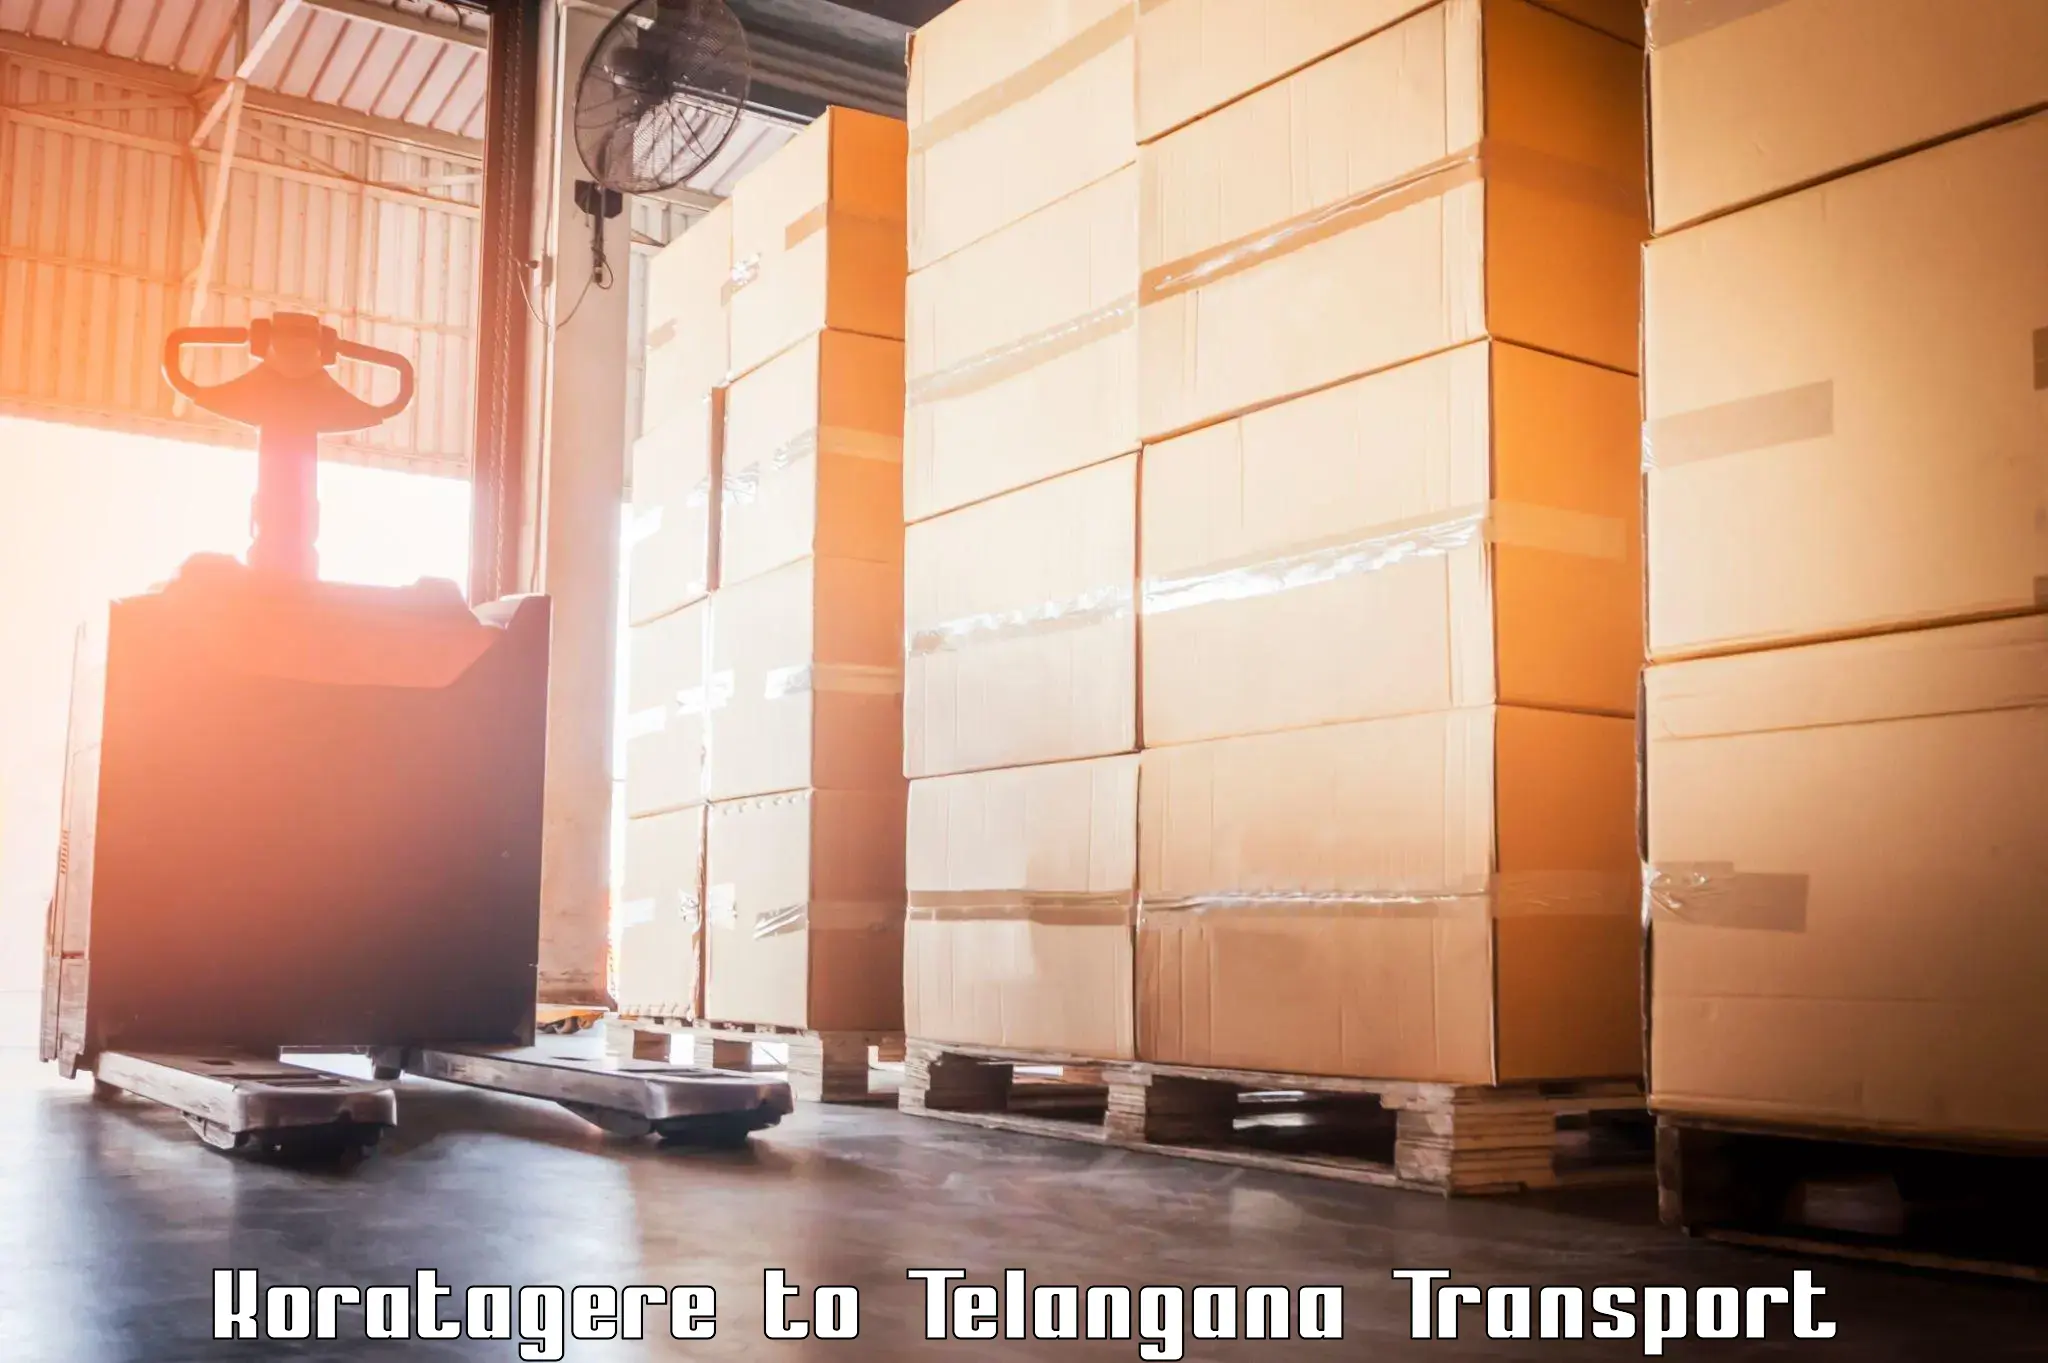 International cargo transportation services Koratagere to Yerrupalem